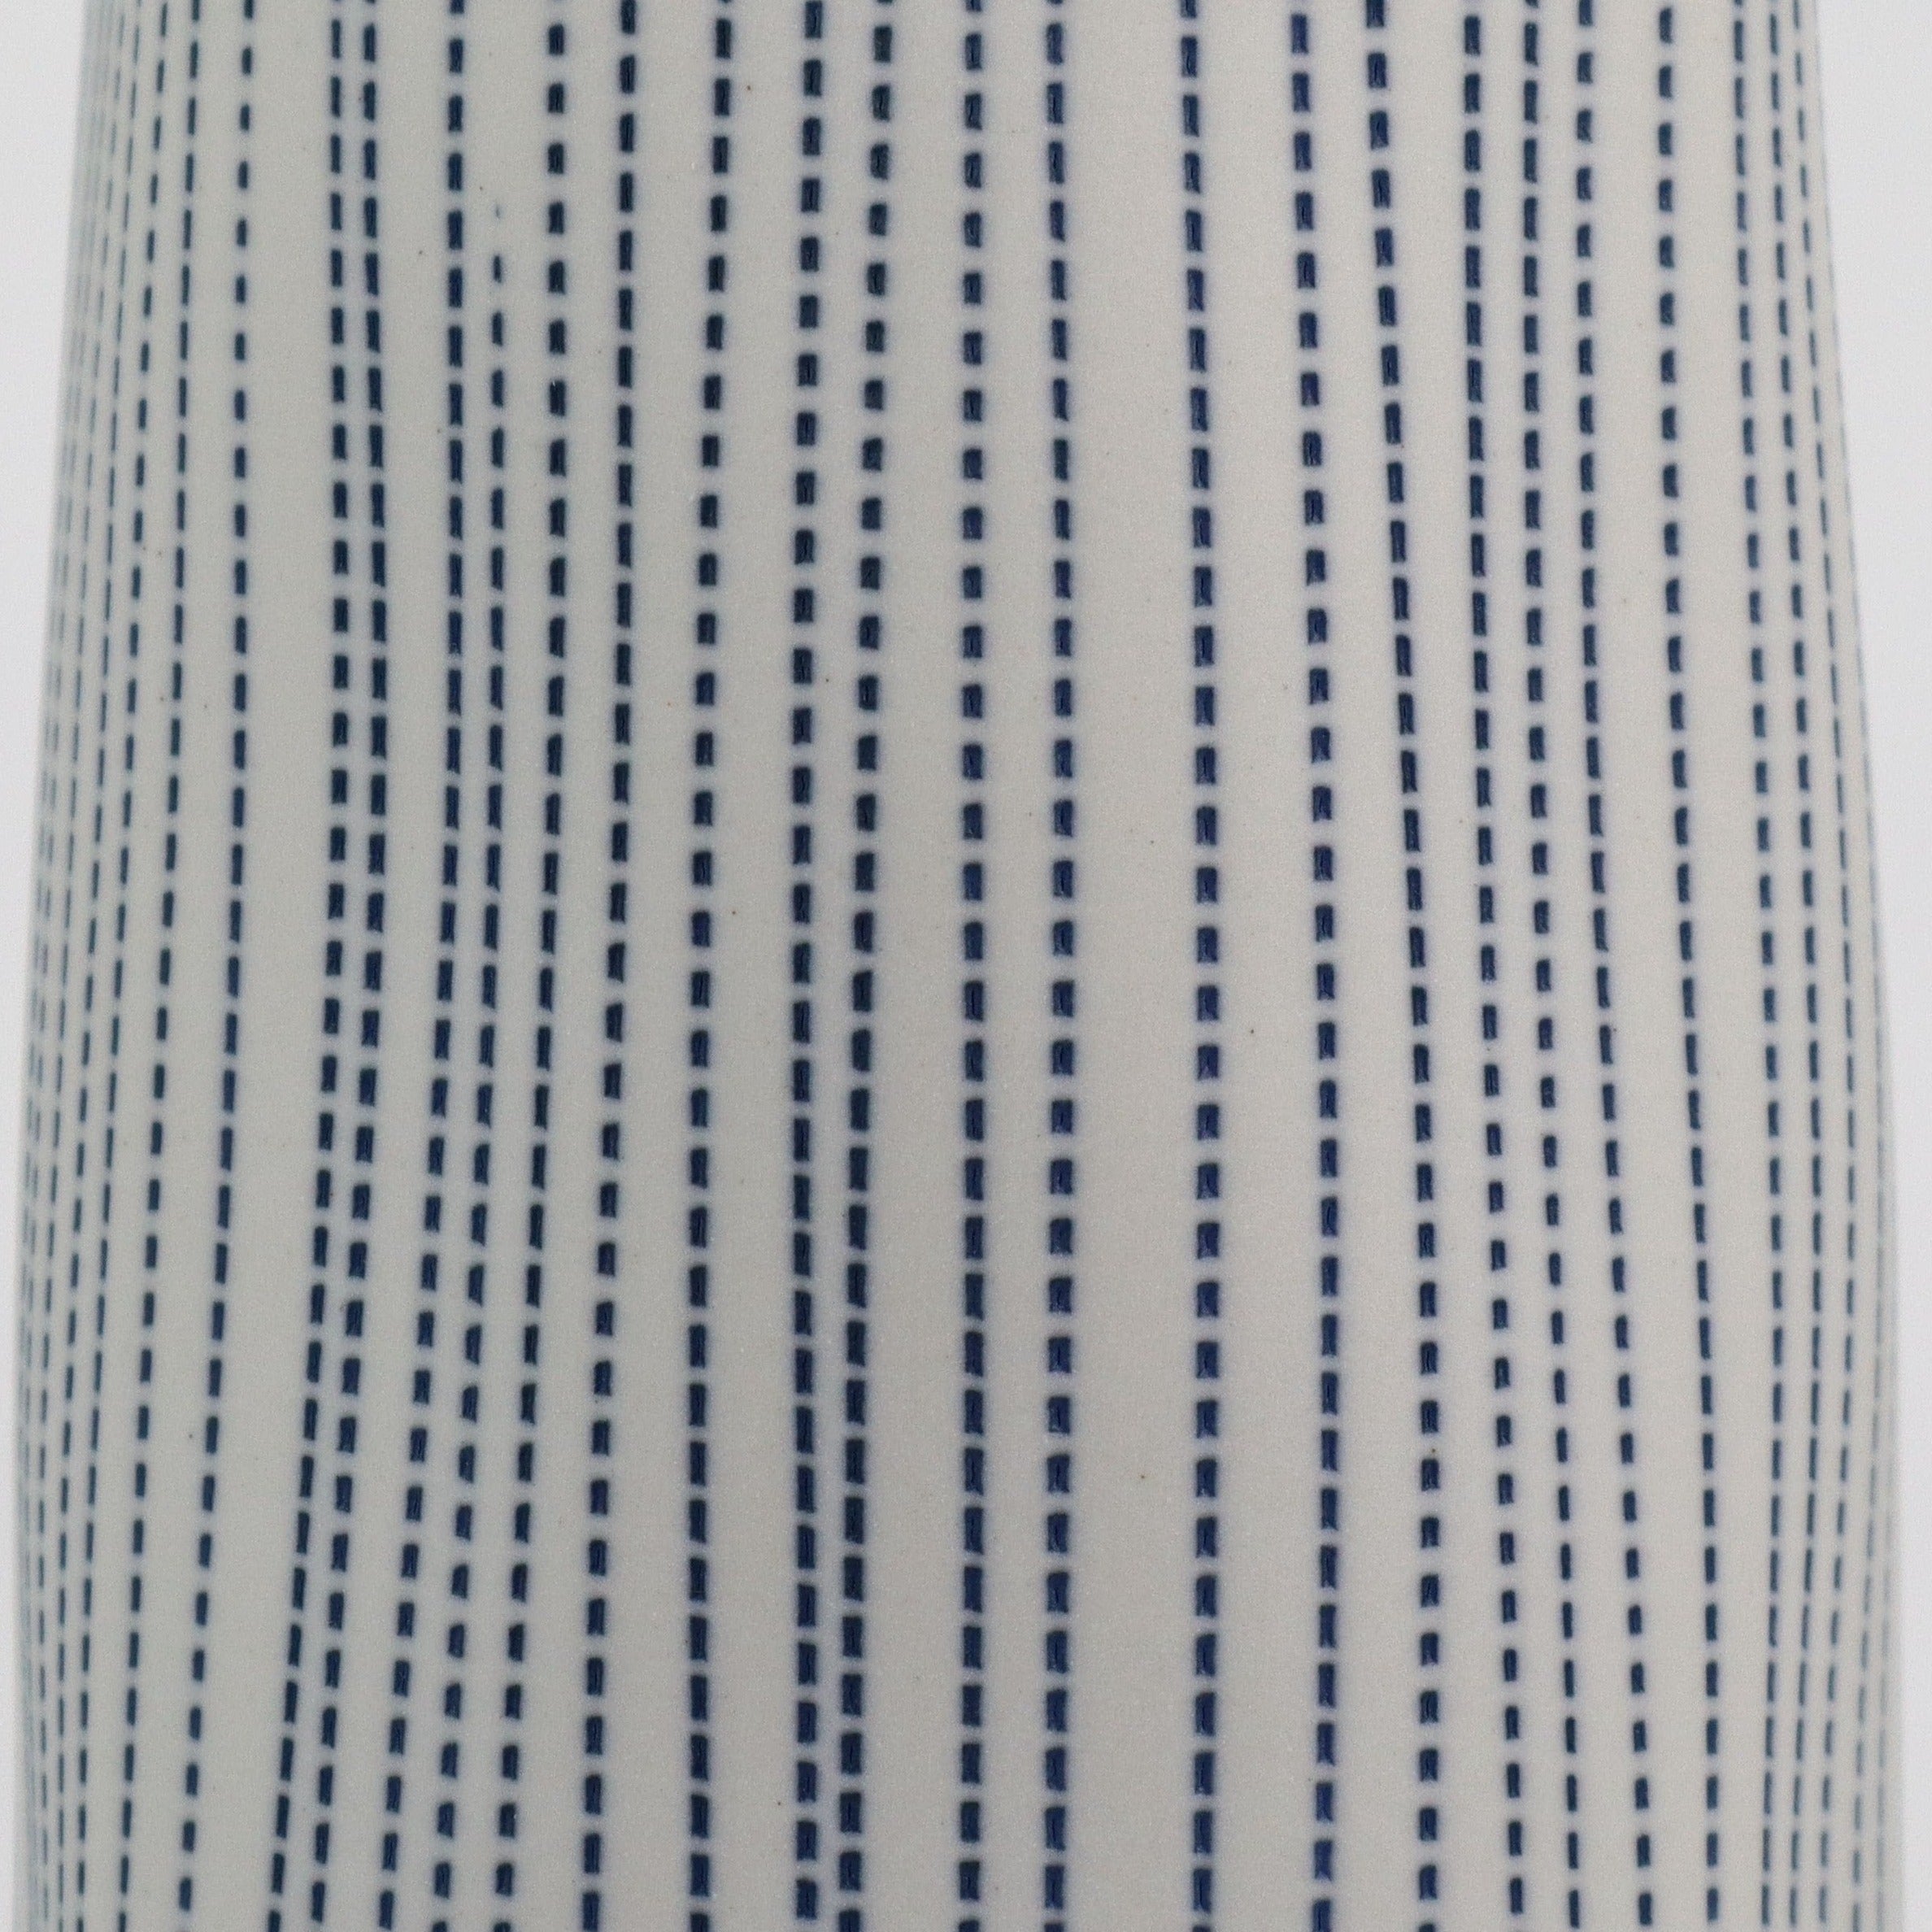 Anemone Small Vase